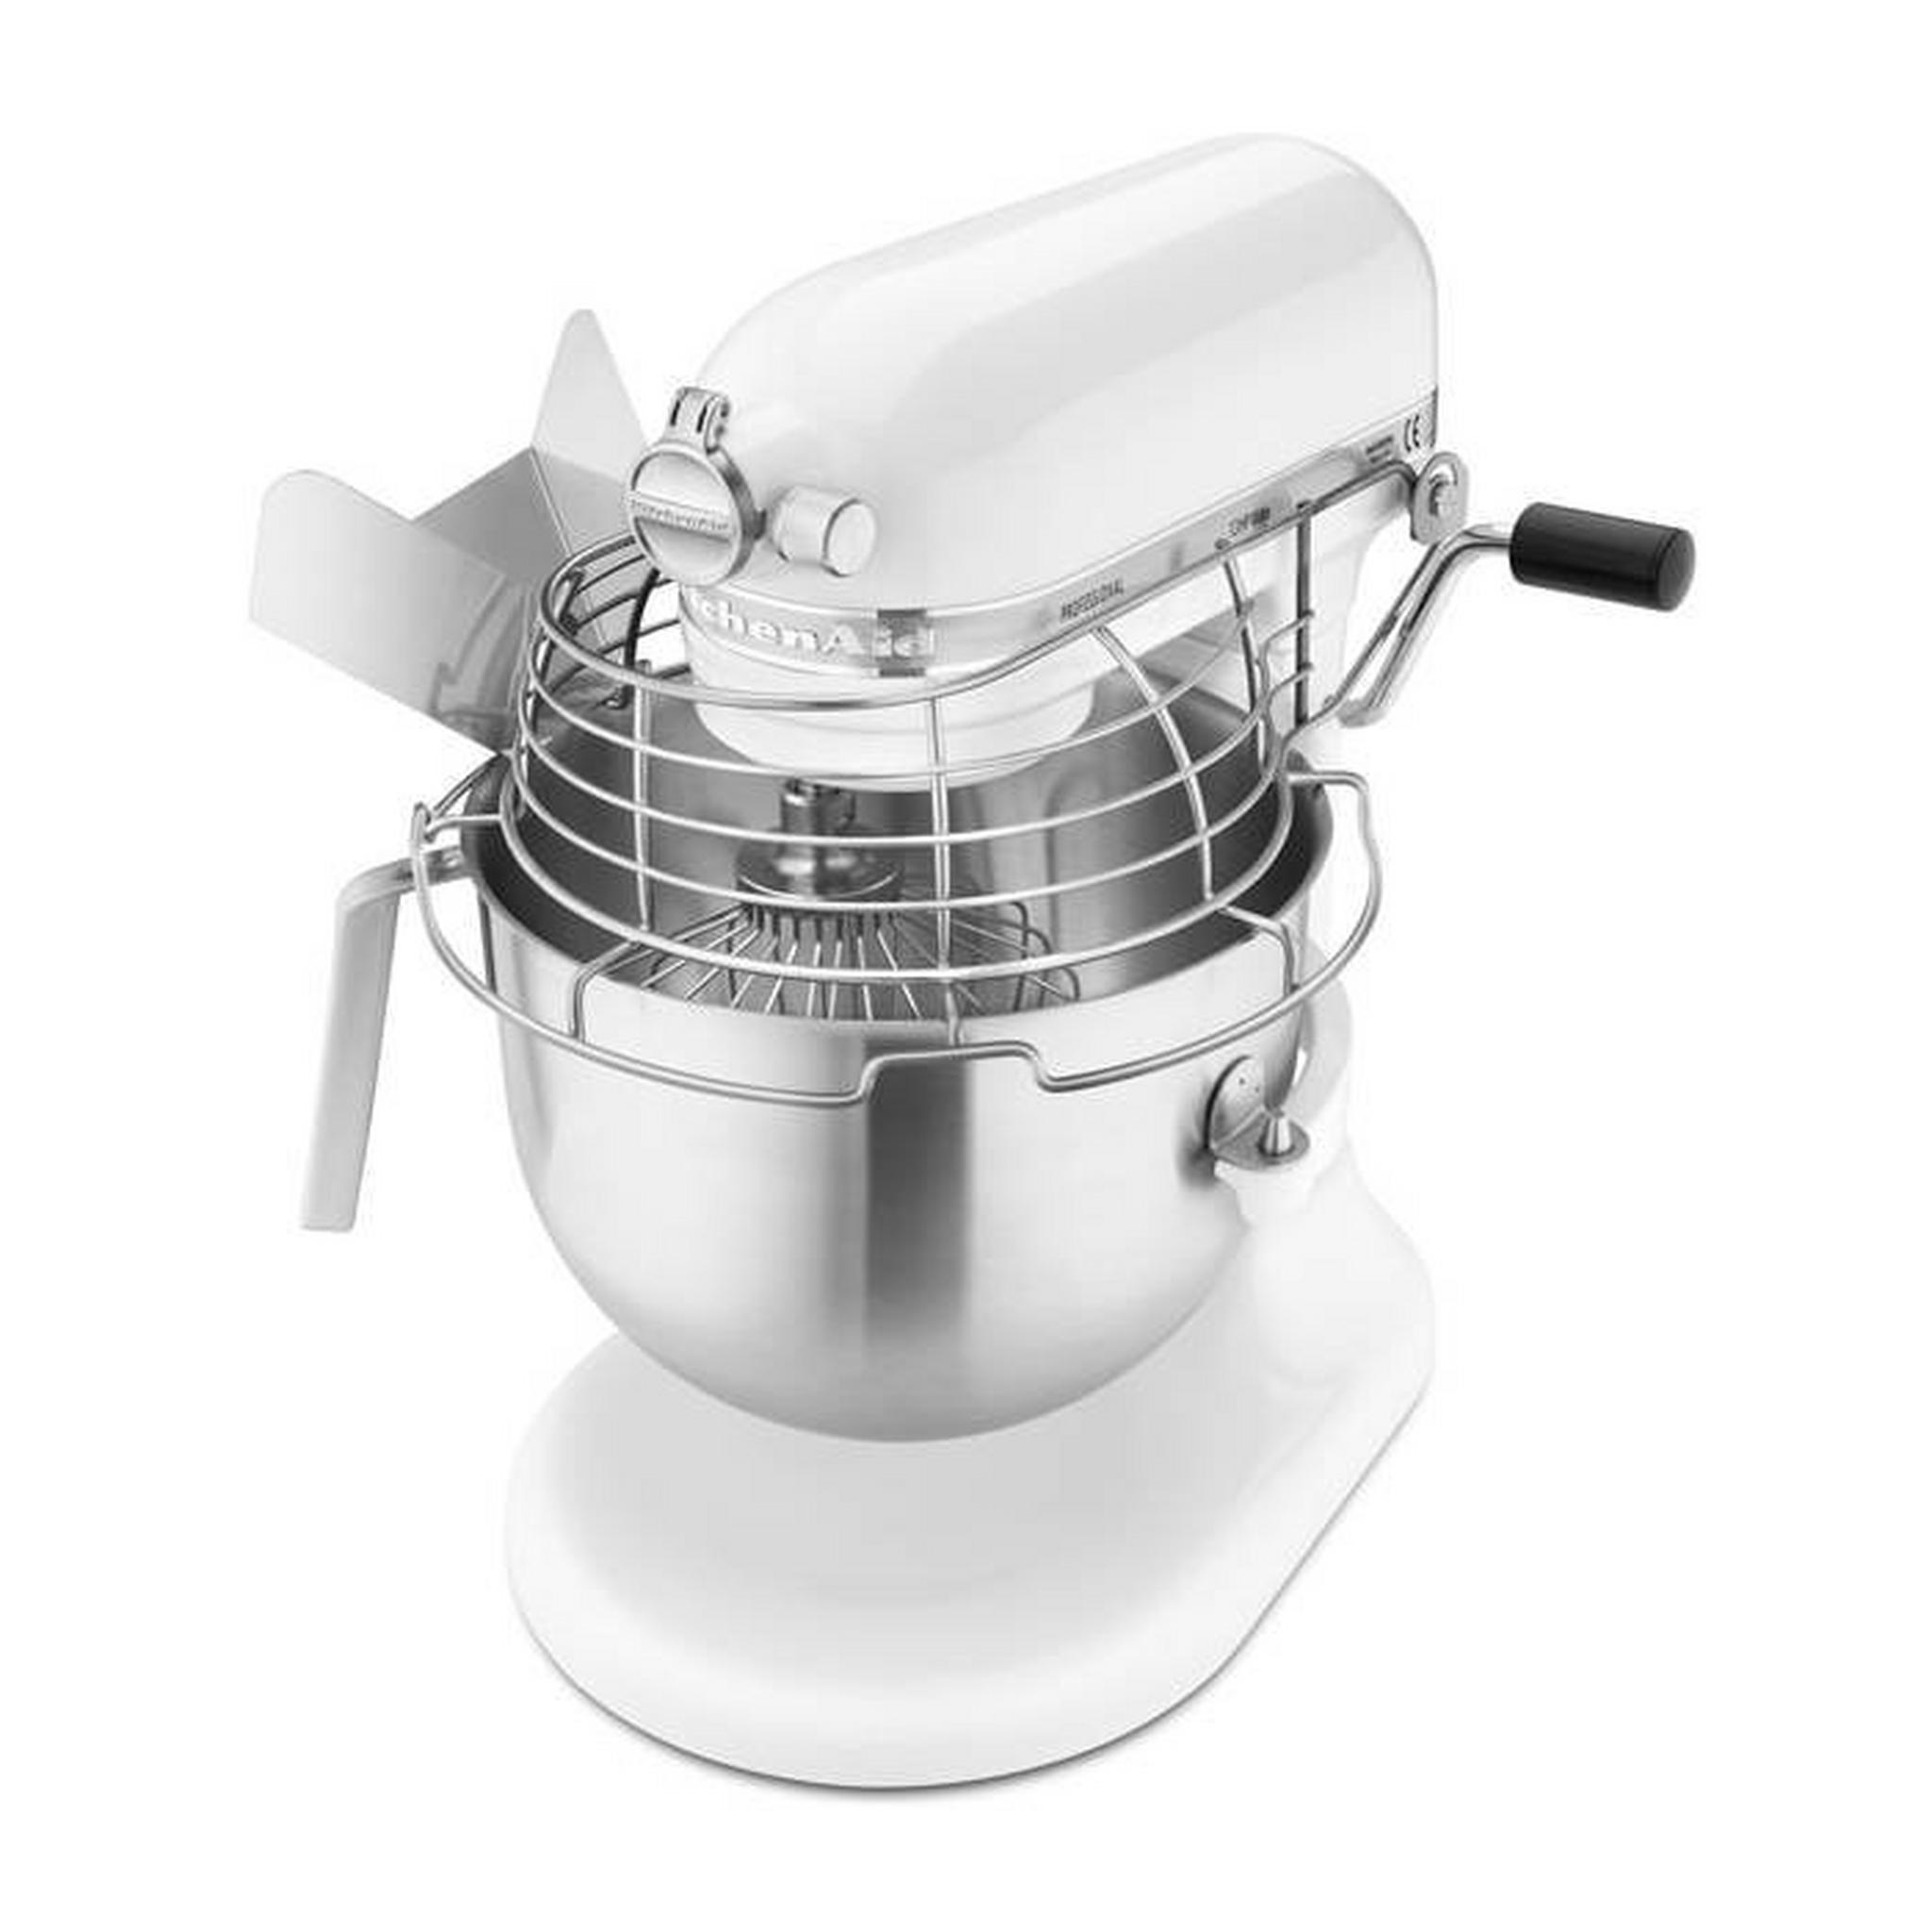 KitchenAid Bowl Lift Stand Mixer, 6.9L, 325 Watt, 5KSM7990XBWH – White